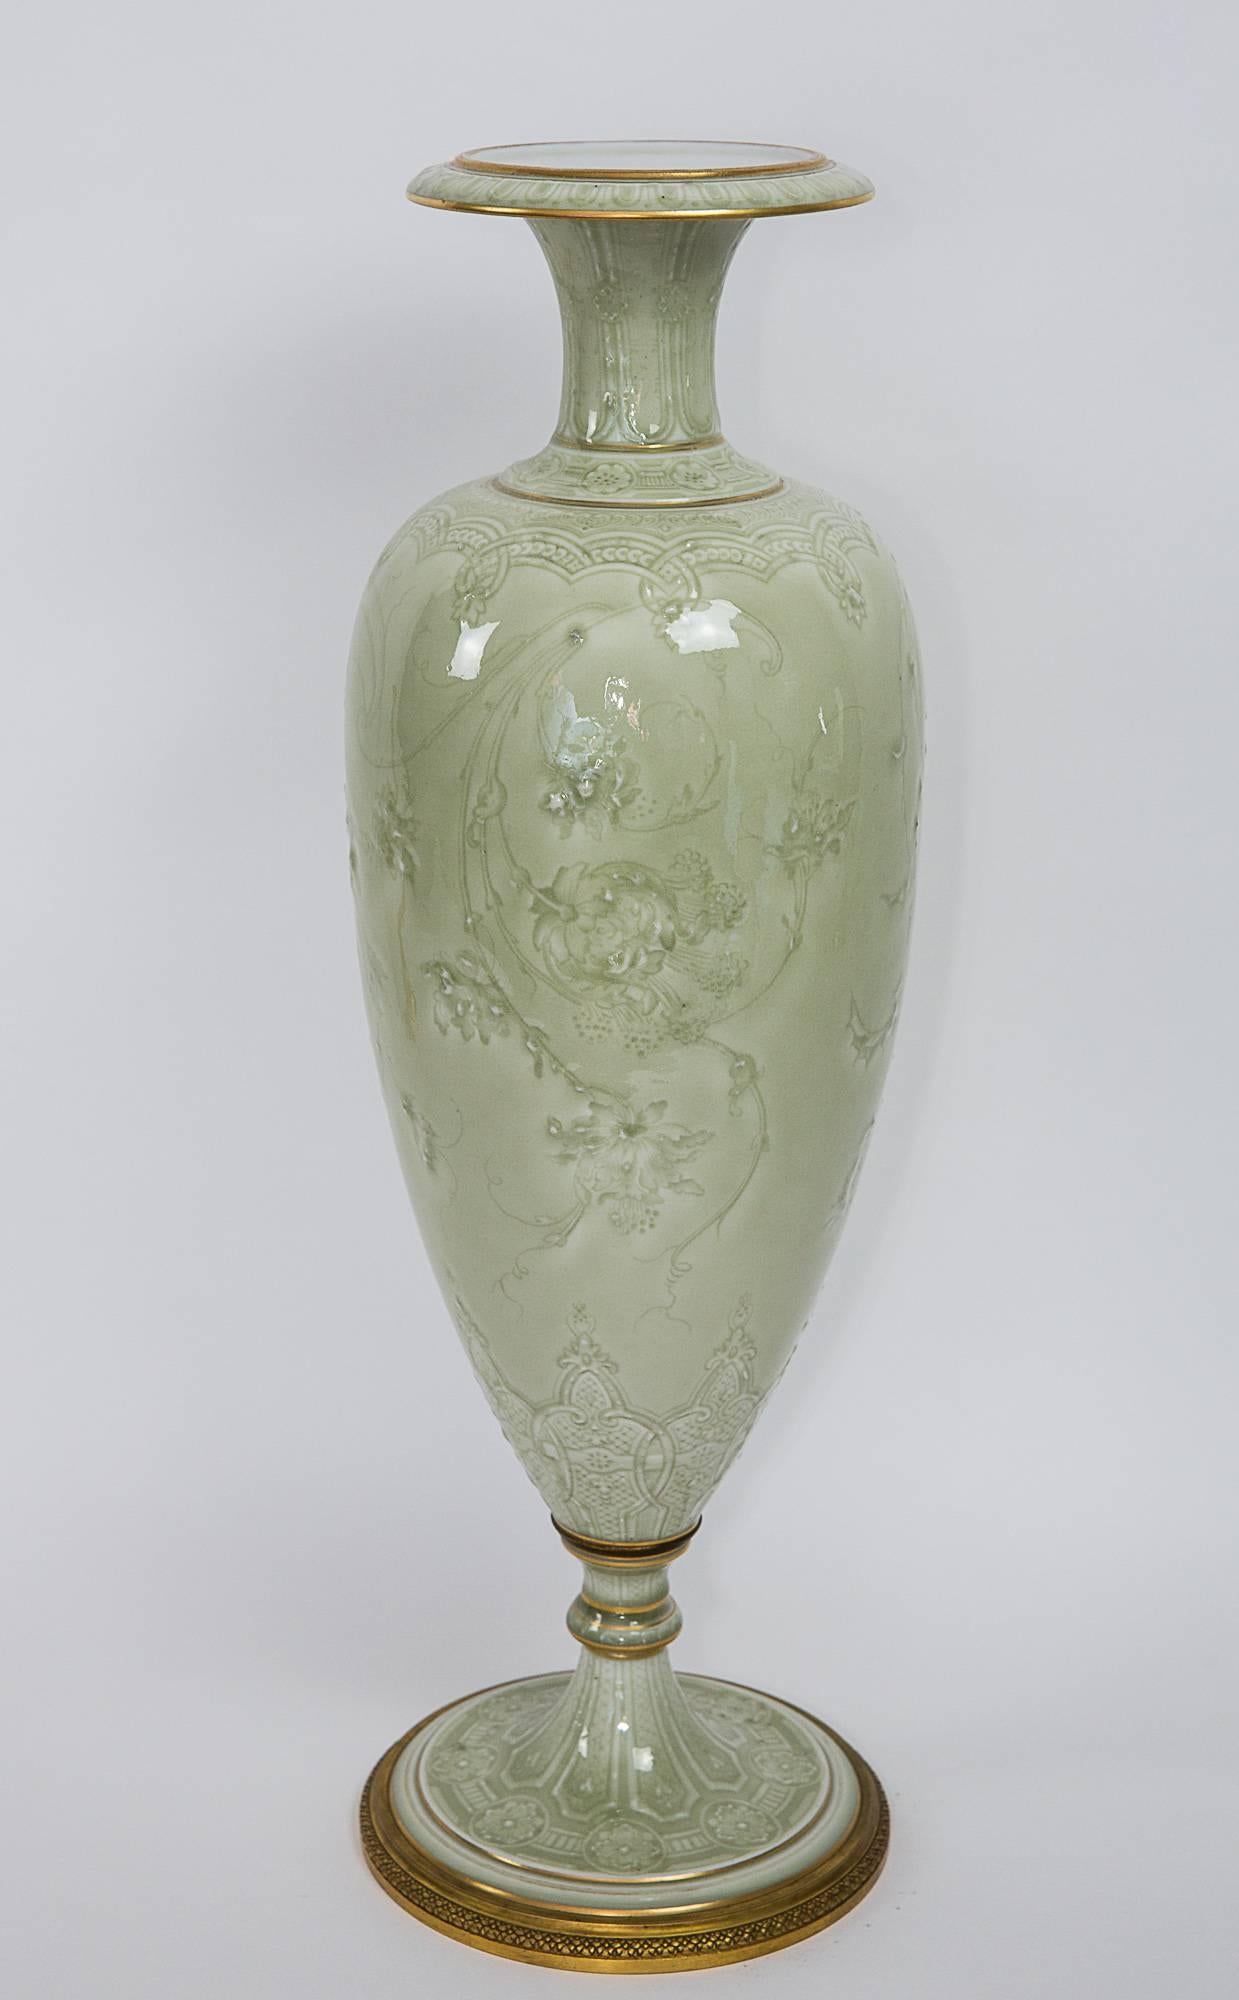 Carrier Belleuse and Sevres Porcelain Vase 4